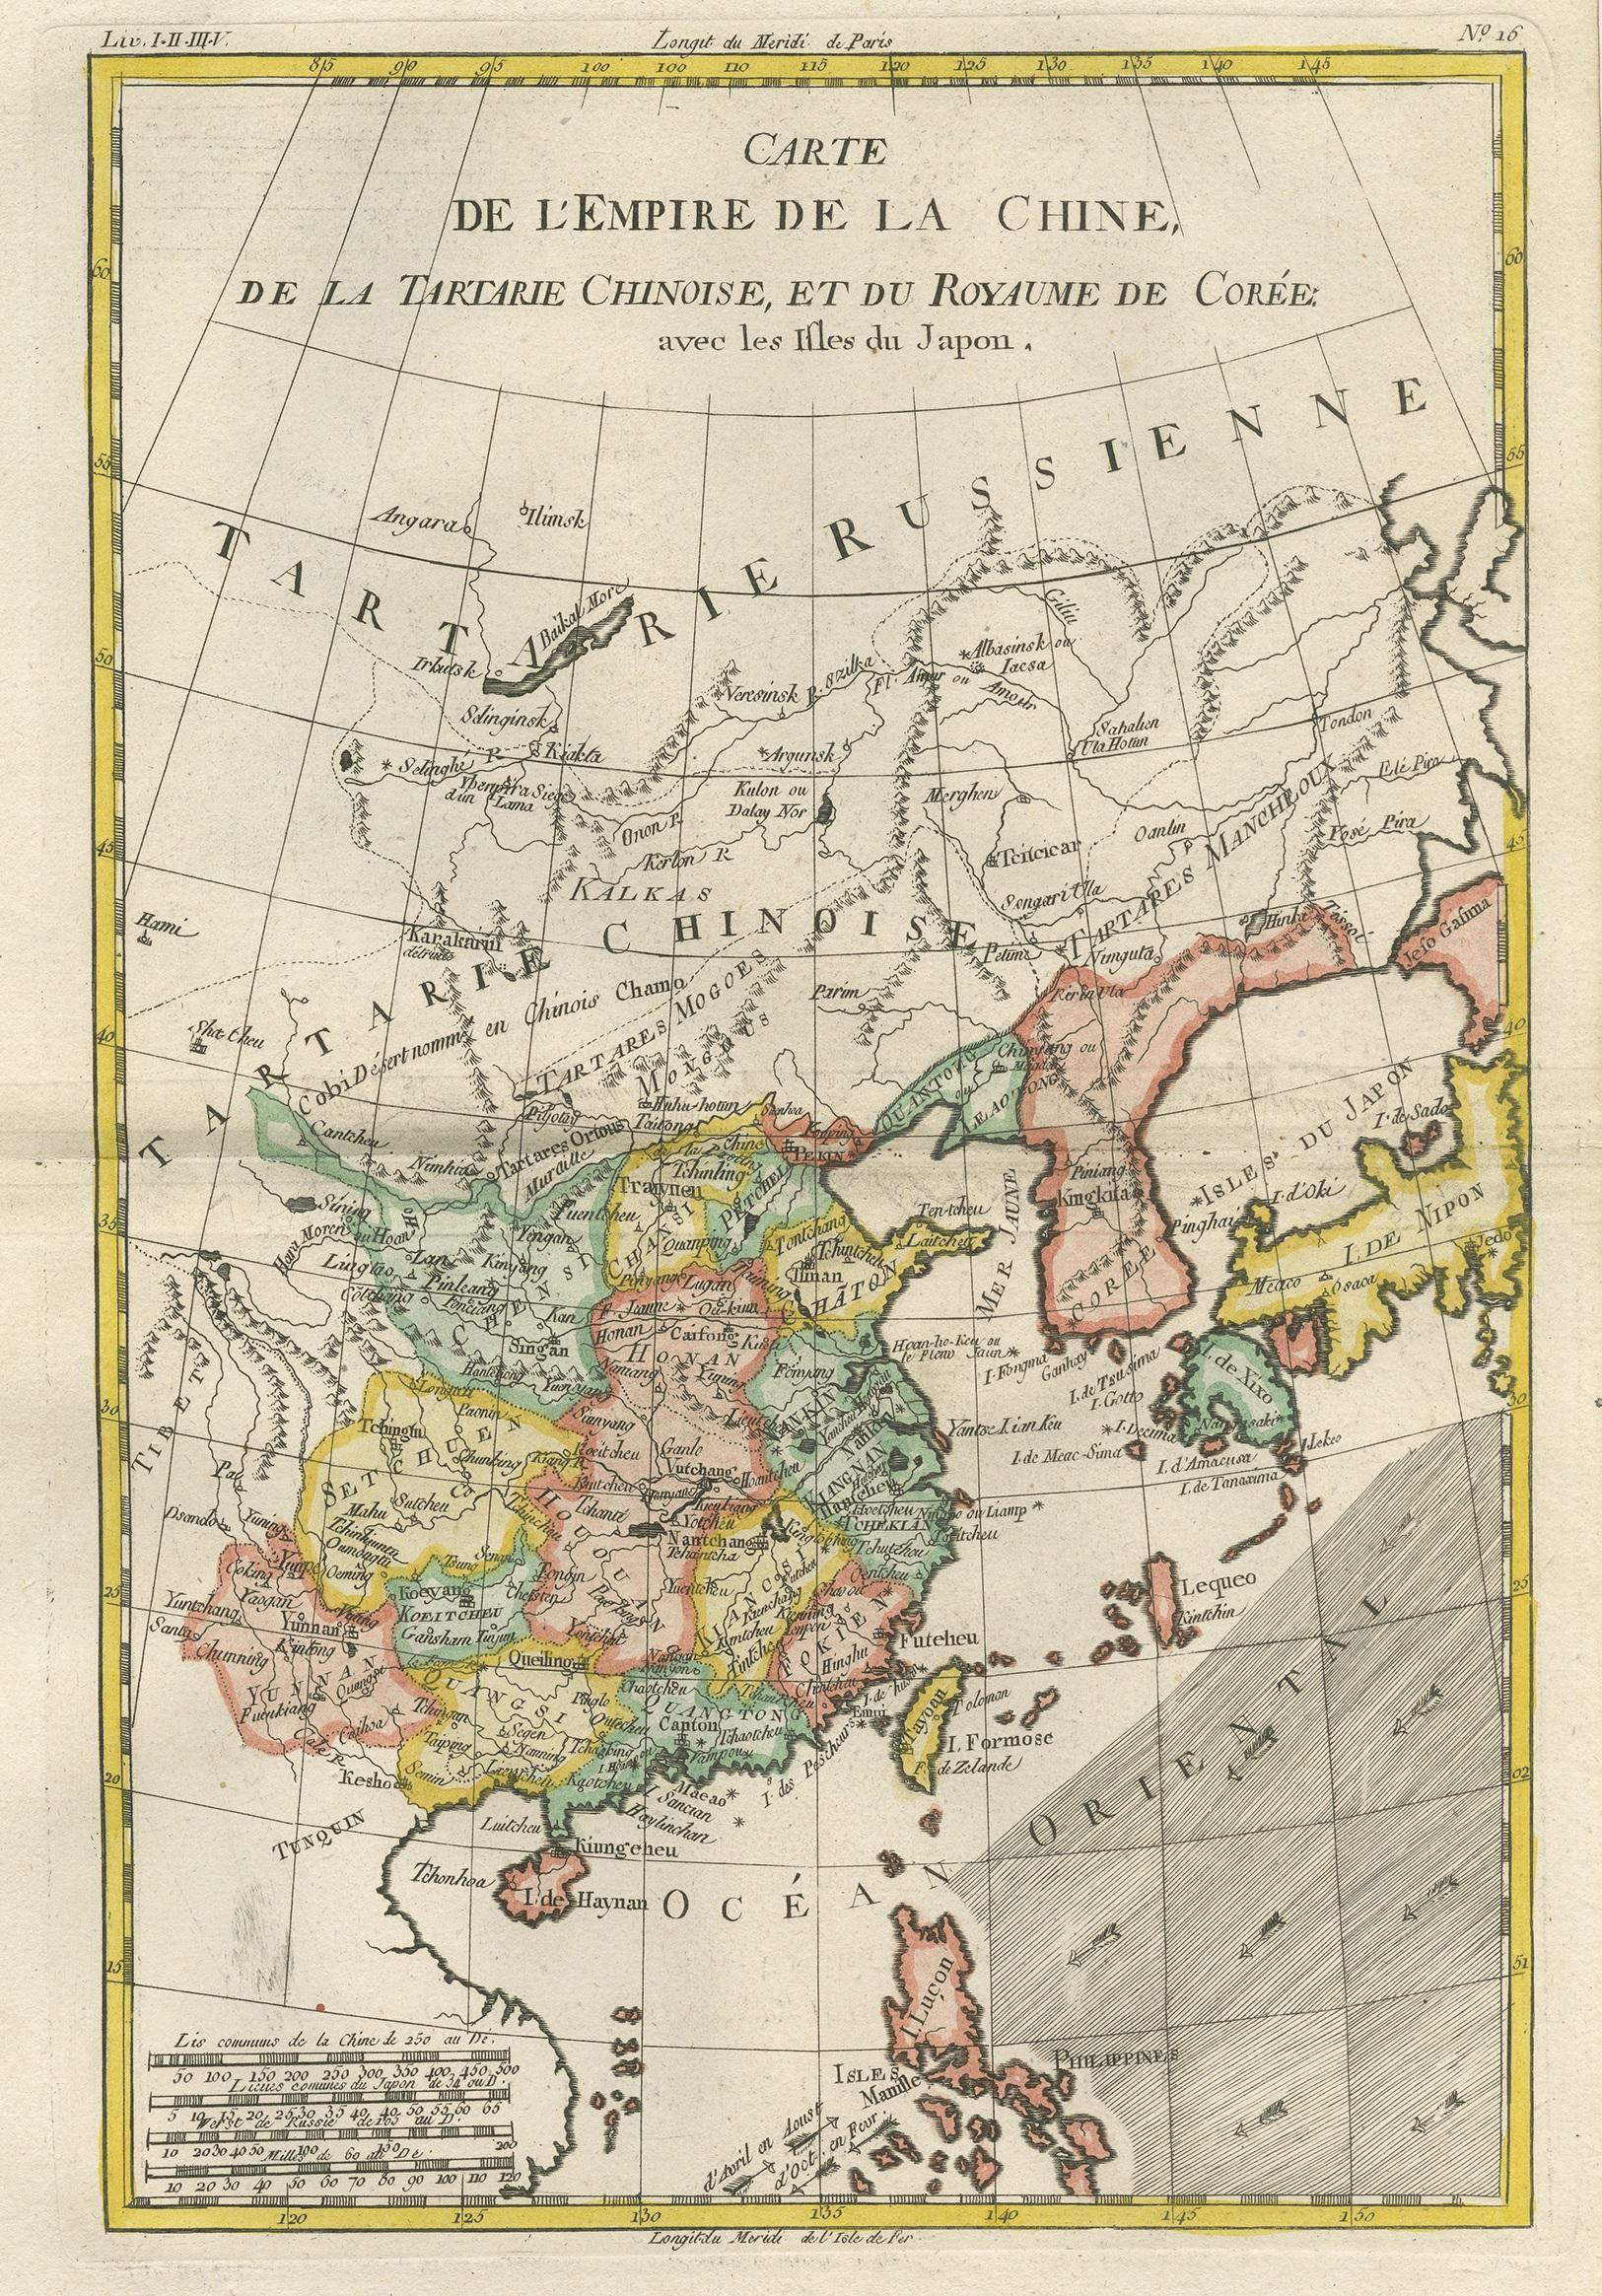 Antique map titled 'Carte de l'Empire de la Chine de la Tartarie Chinoise, et du Royaume de Corée'. Interesting and detailed map of China, Korea, Japan and the Northern Philippines. Published circa 1780.